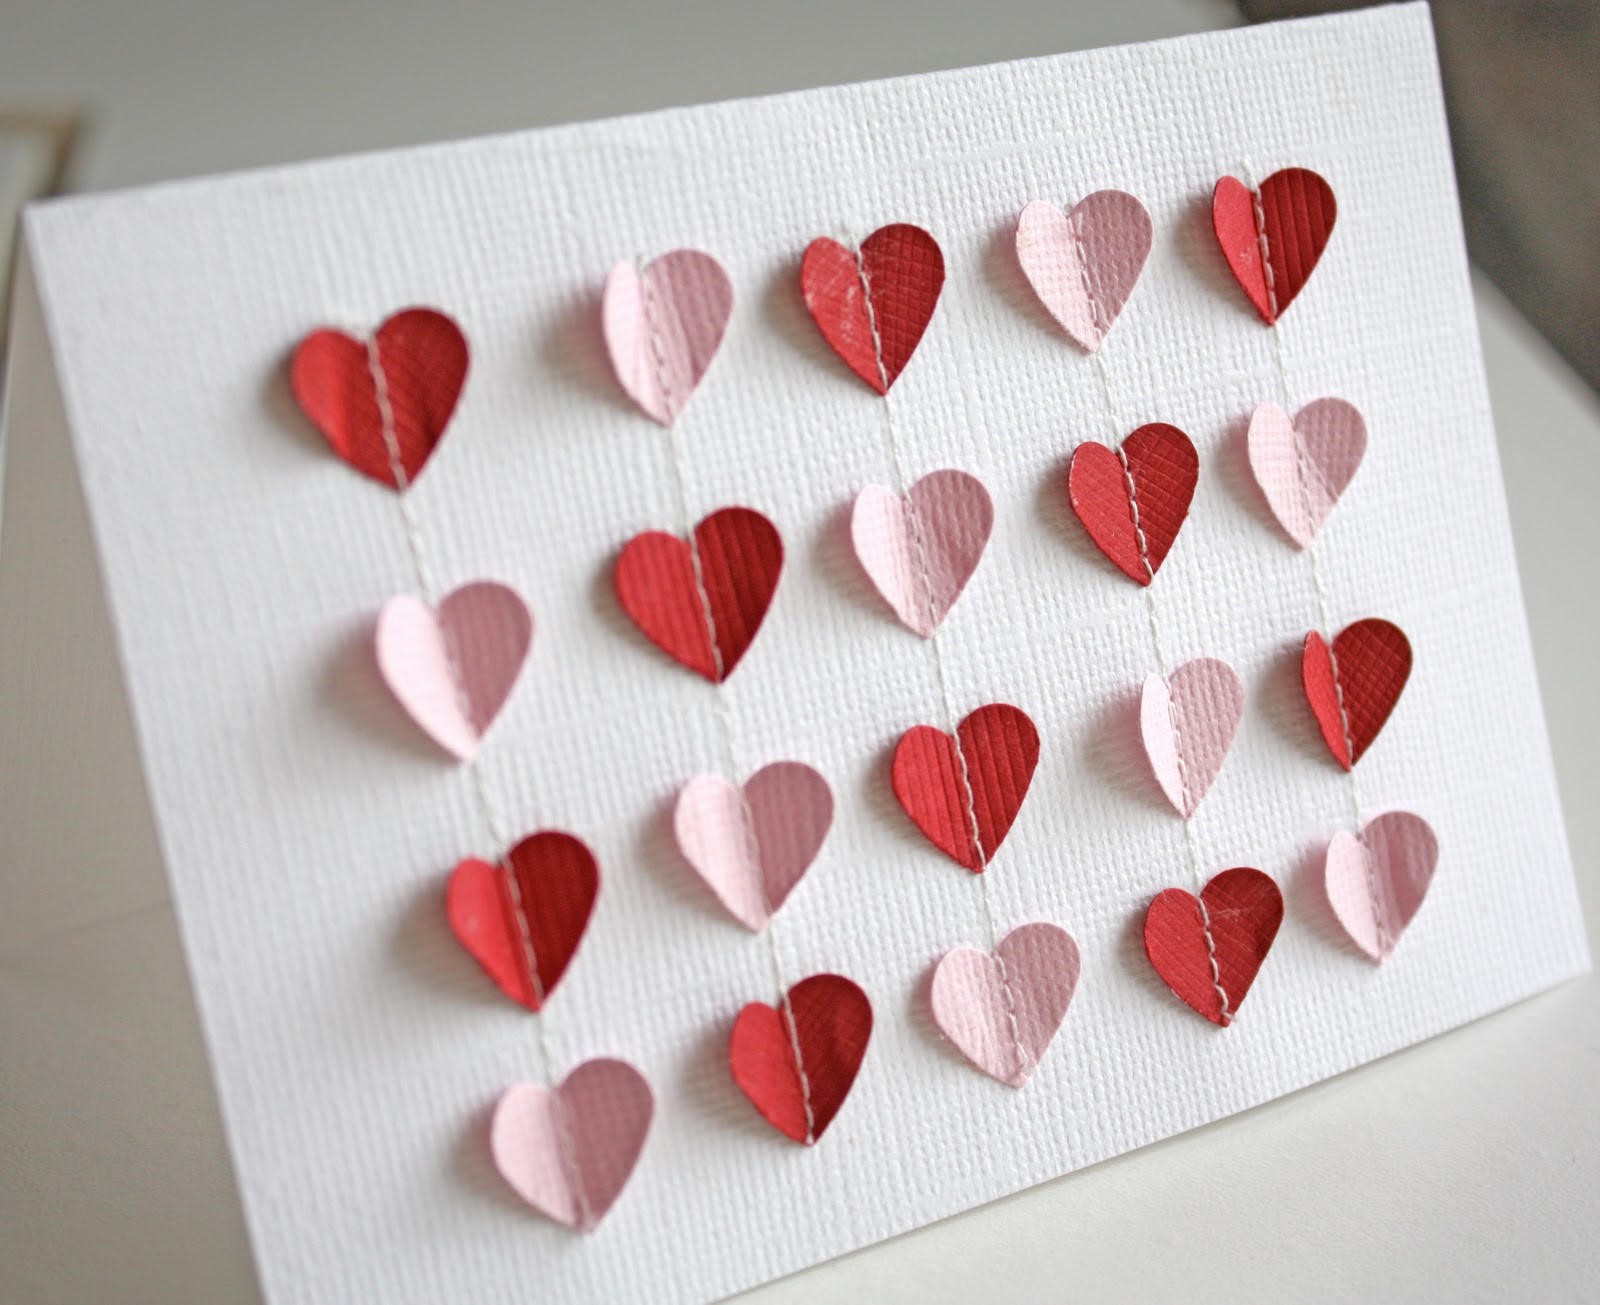 Поделка из сердечек из бумаги. Поделка сердечко. Оригинальные валентинки. Необычные валентинки. Поделки на день влюбленных.